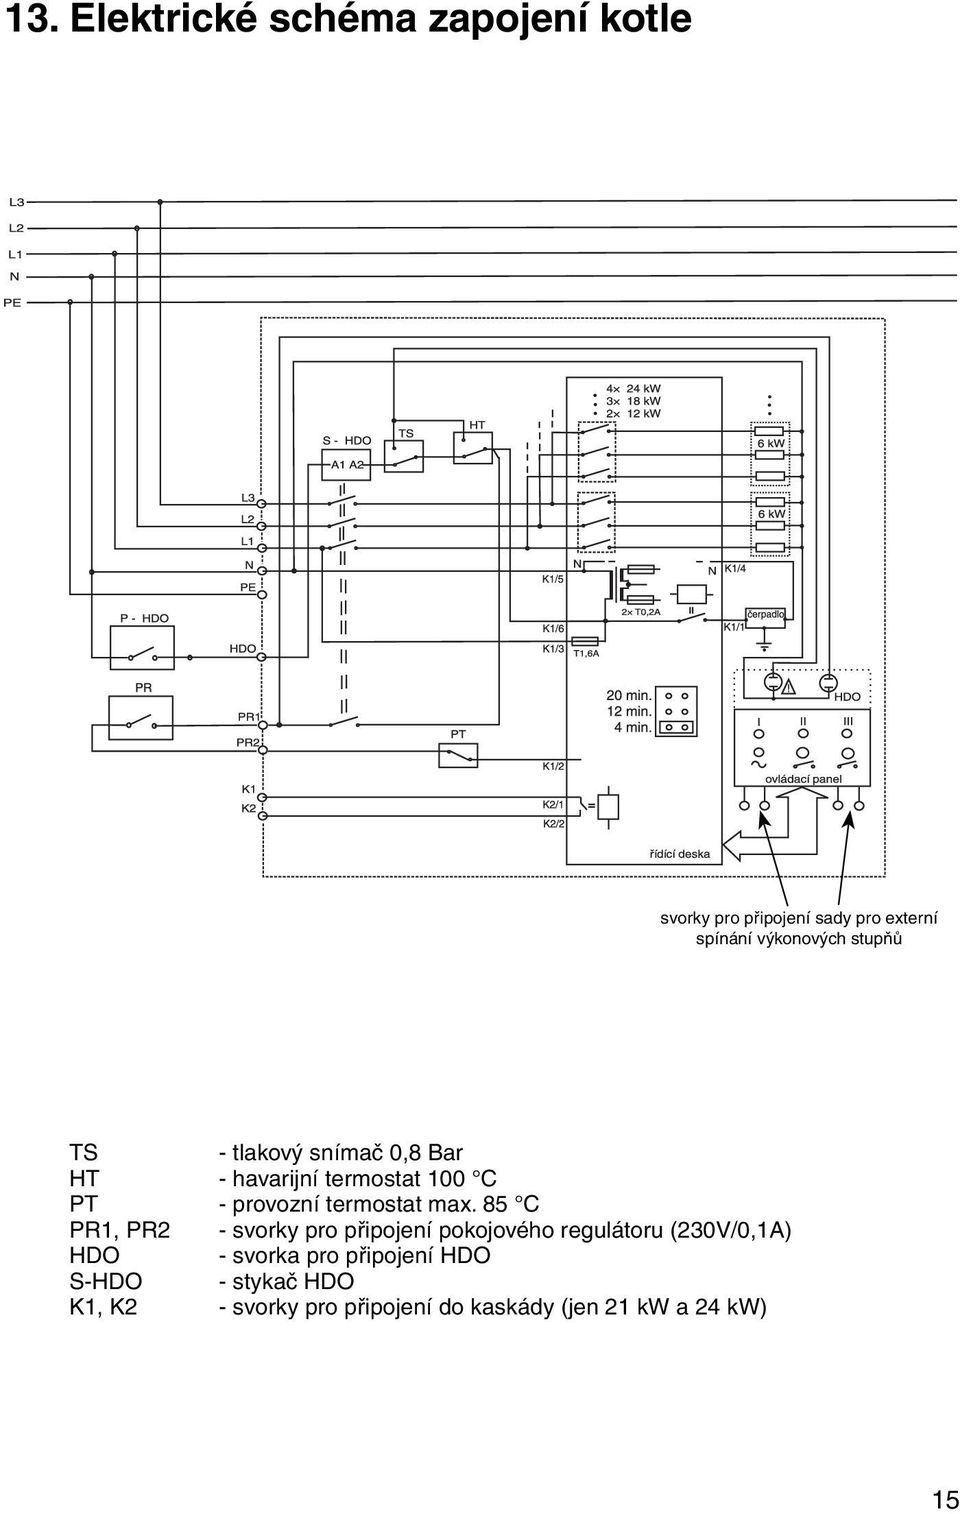 85 C PR1, PR2 - svorky pro připojení pokojového regulátoru (230V/0,1A) HDO - svorka pro